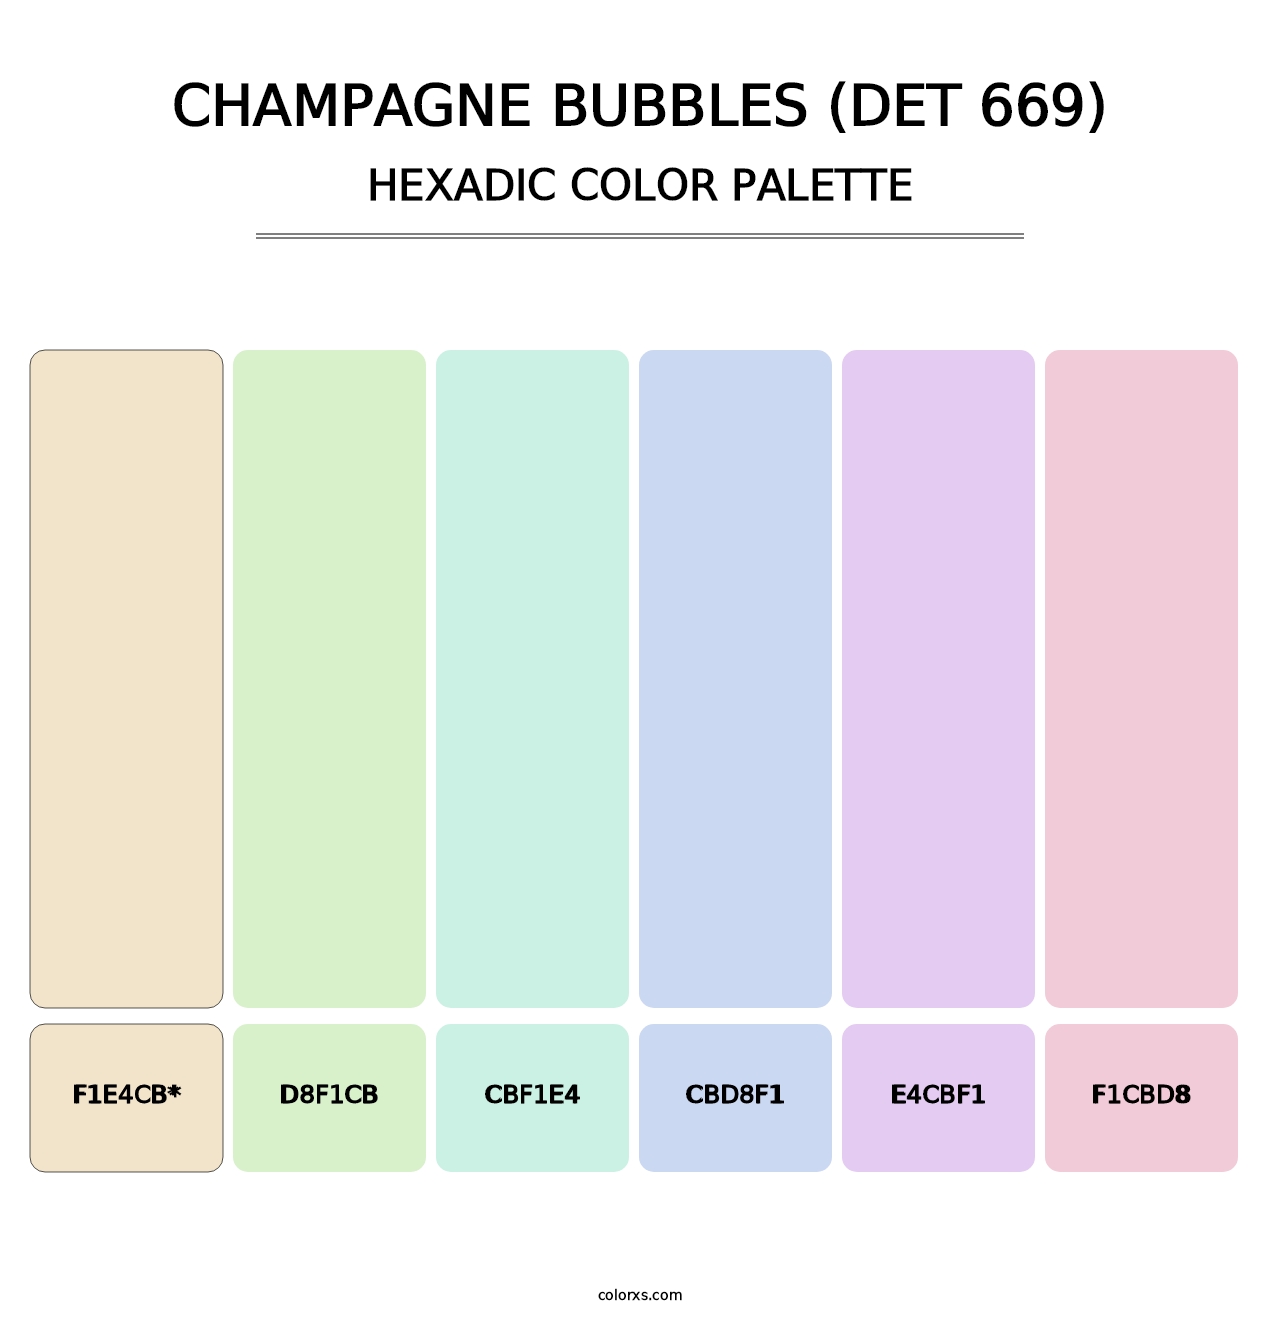 Champagne Bubbles (DET 669) - Hexadic Color Palette